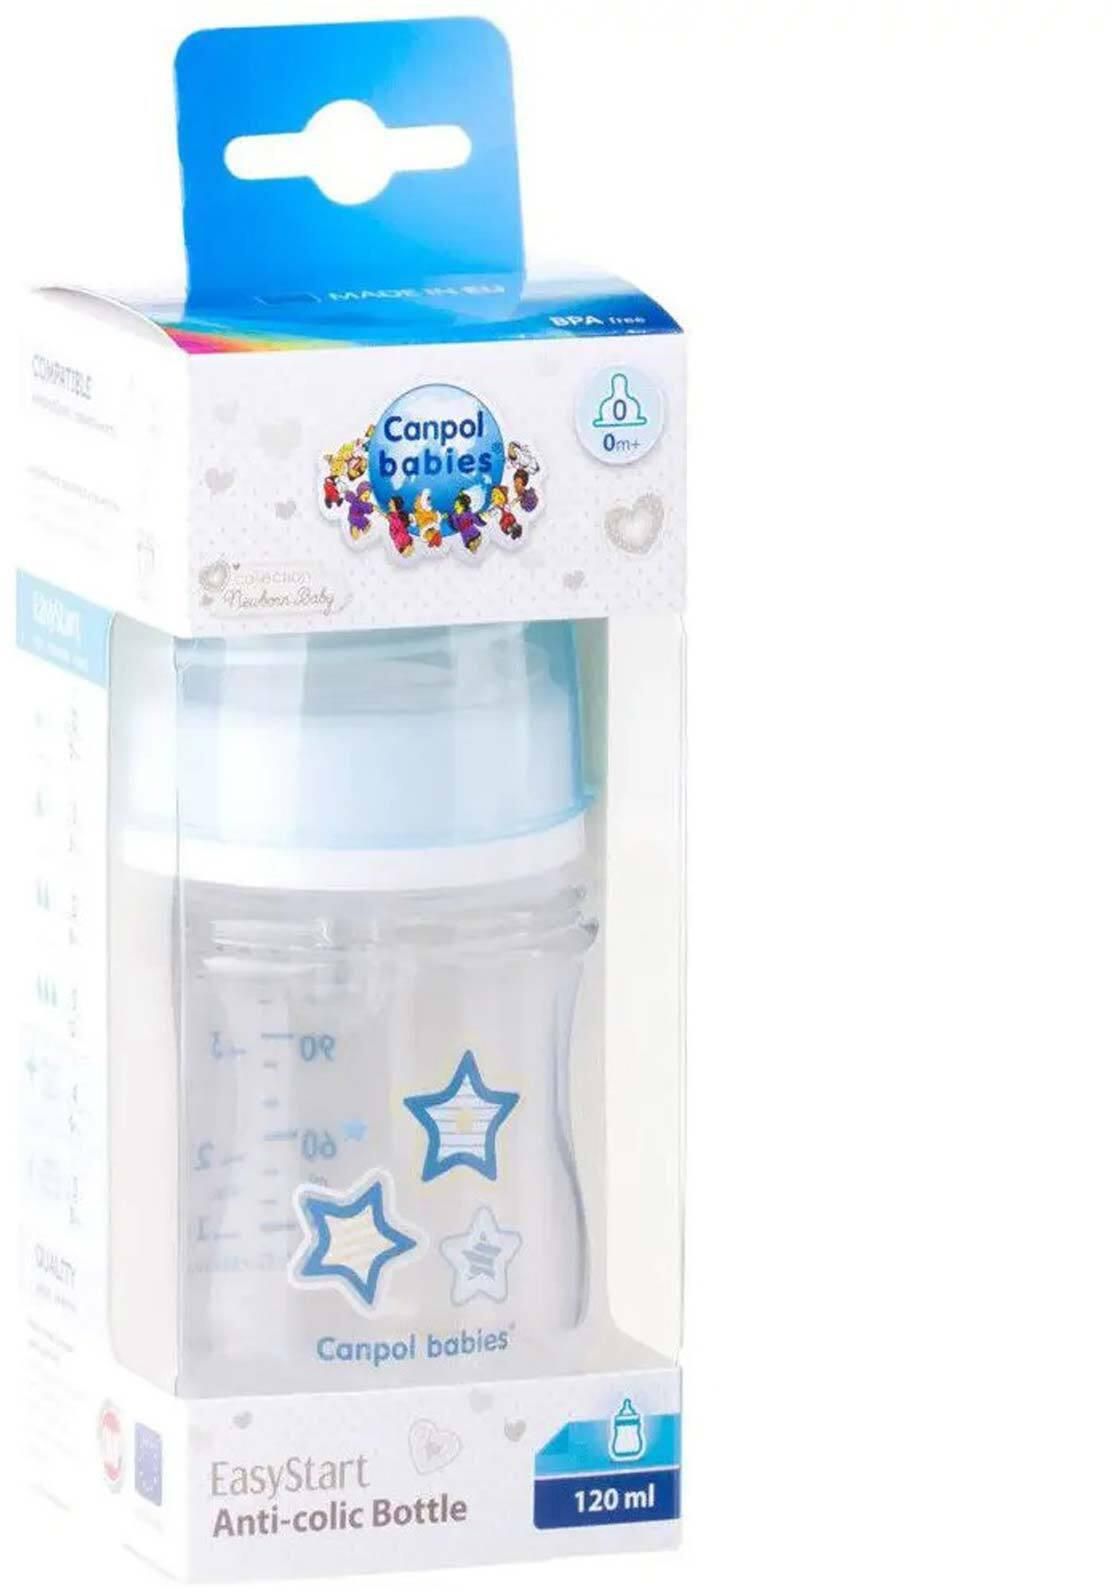 Canpol Babies Stars Newborn Baby Bottle - 120 ml - 0-3 Months - Blue